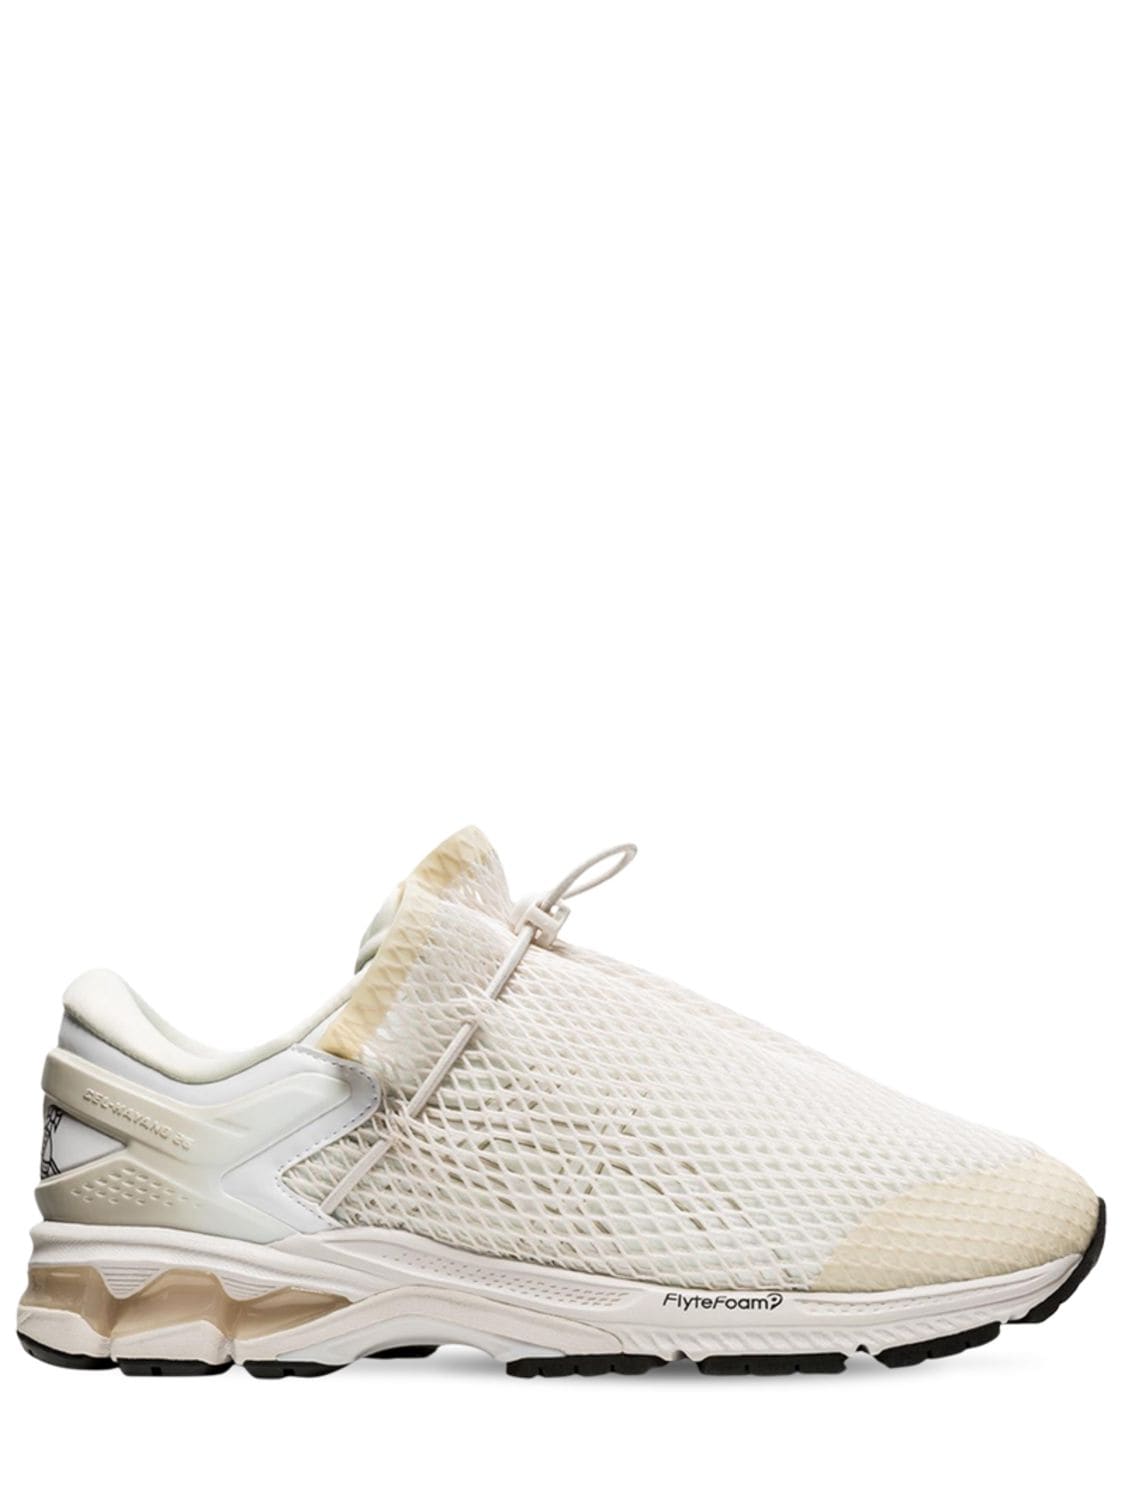 Asics Vivienne Westwood Gel-kayano 26 Sneakers In Birch,white